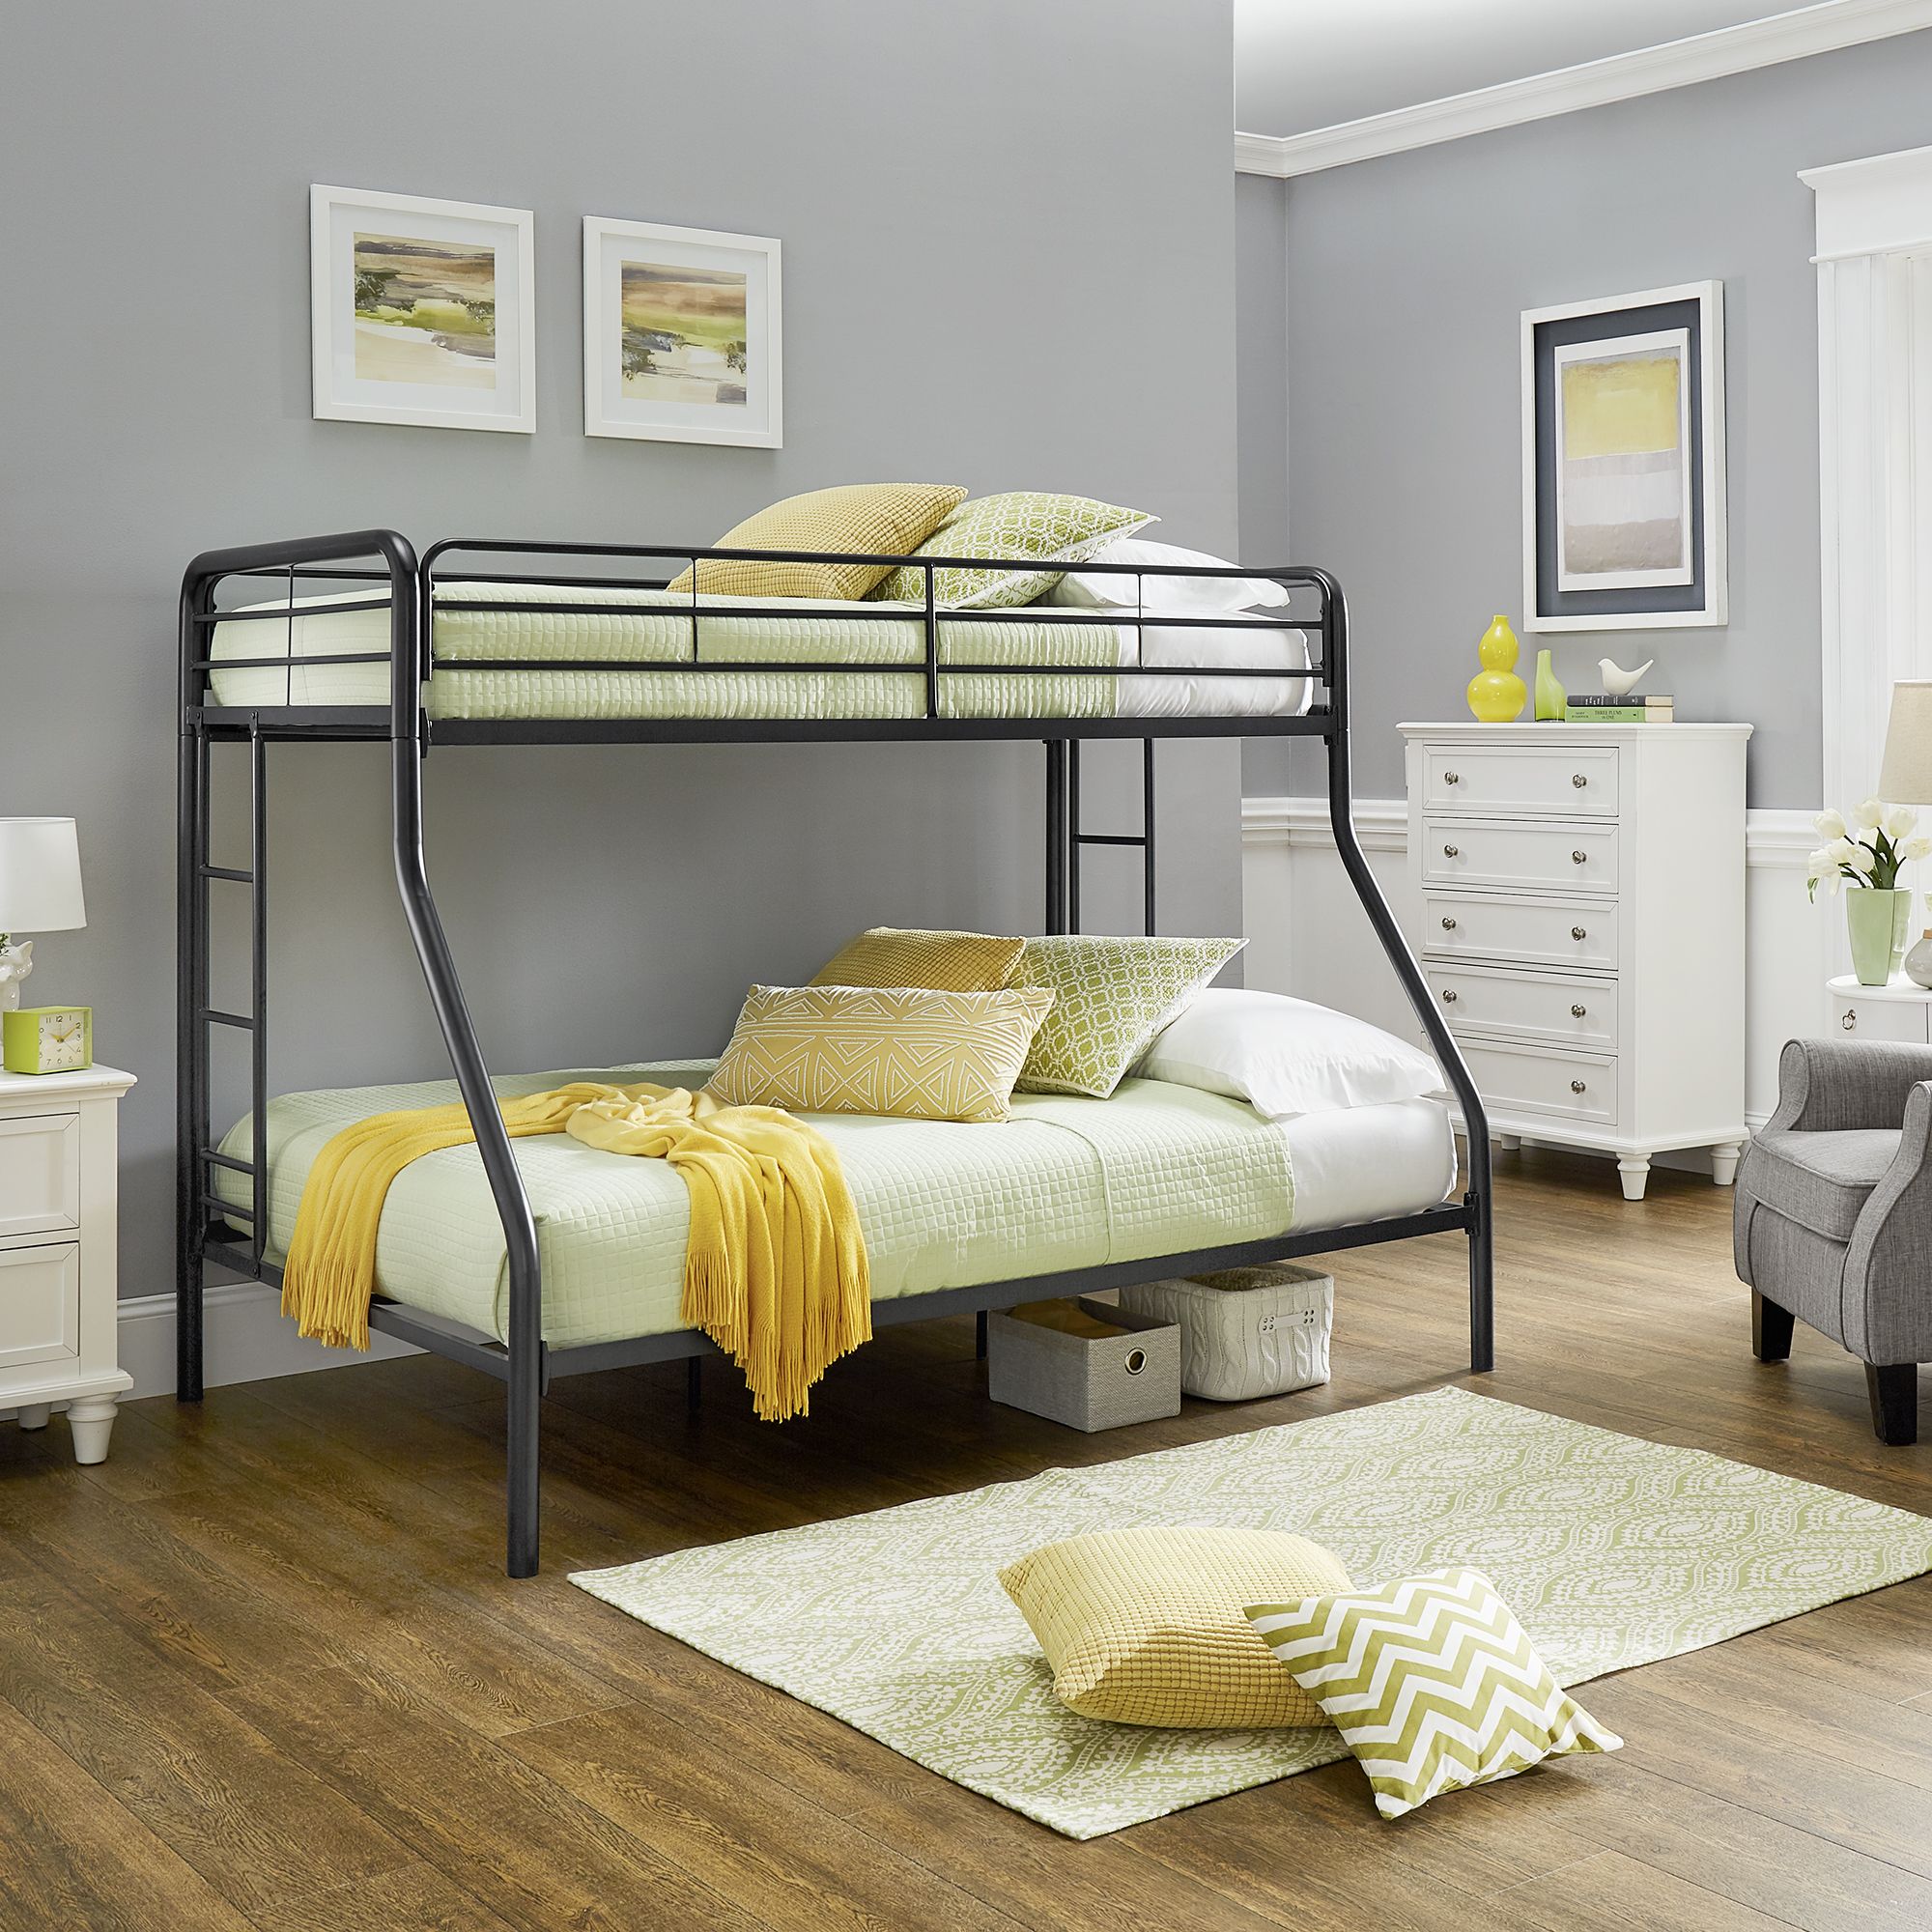 Mia Design Metal Twin Over Full Bunk Bed, Fingerhut Bunk Beds